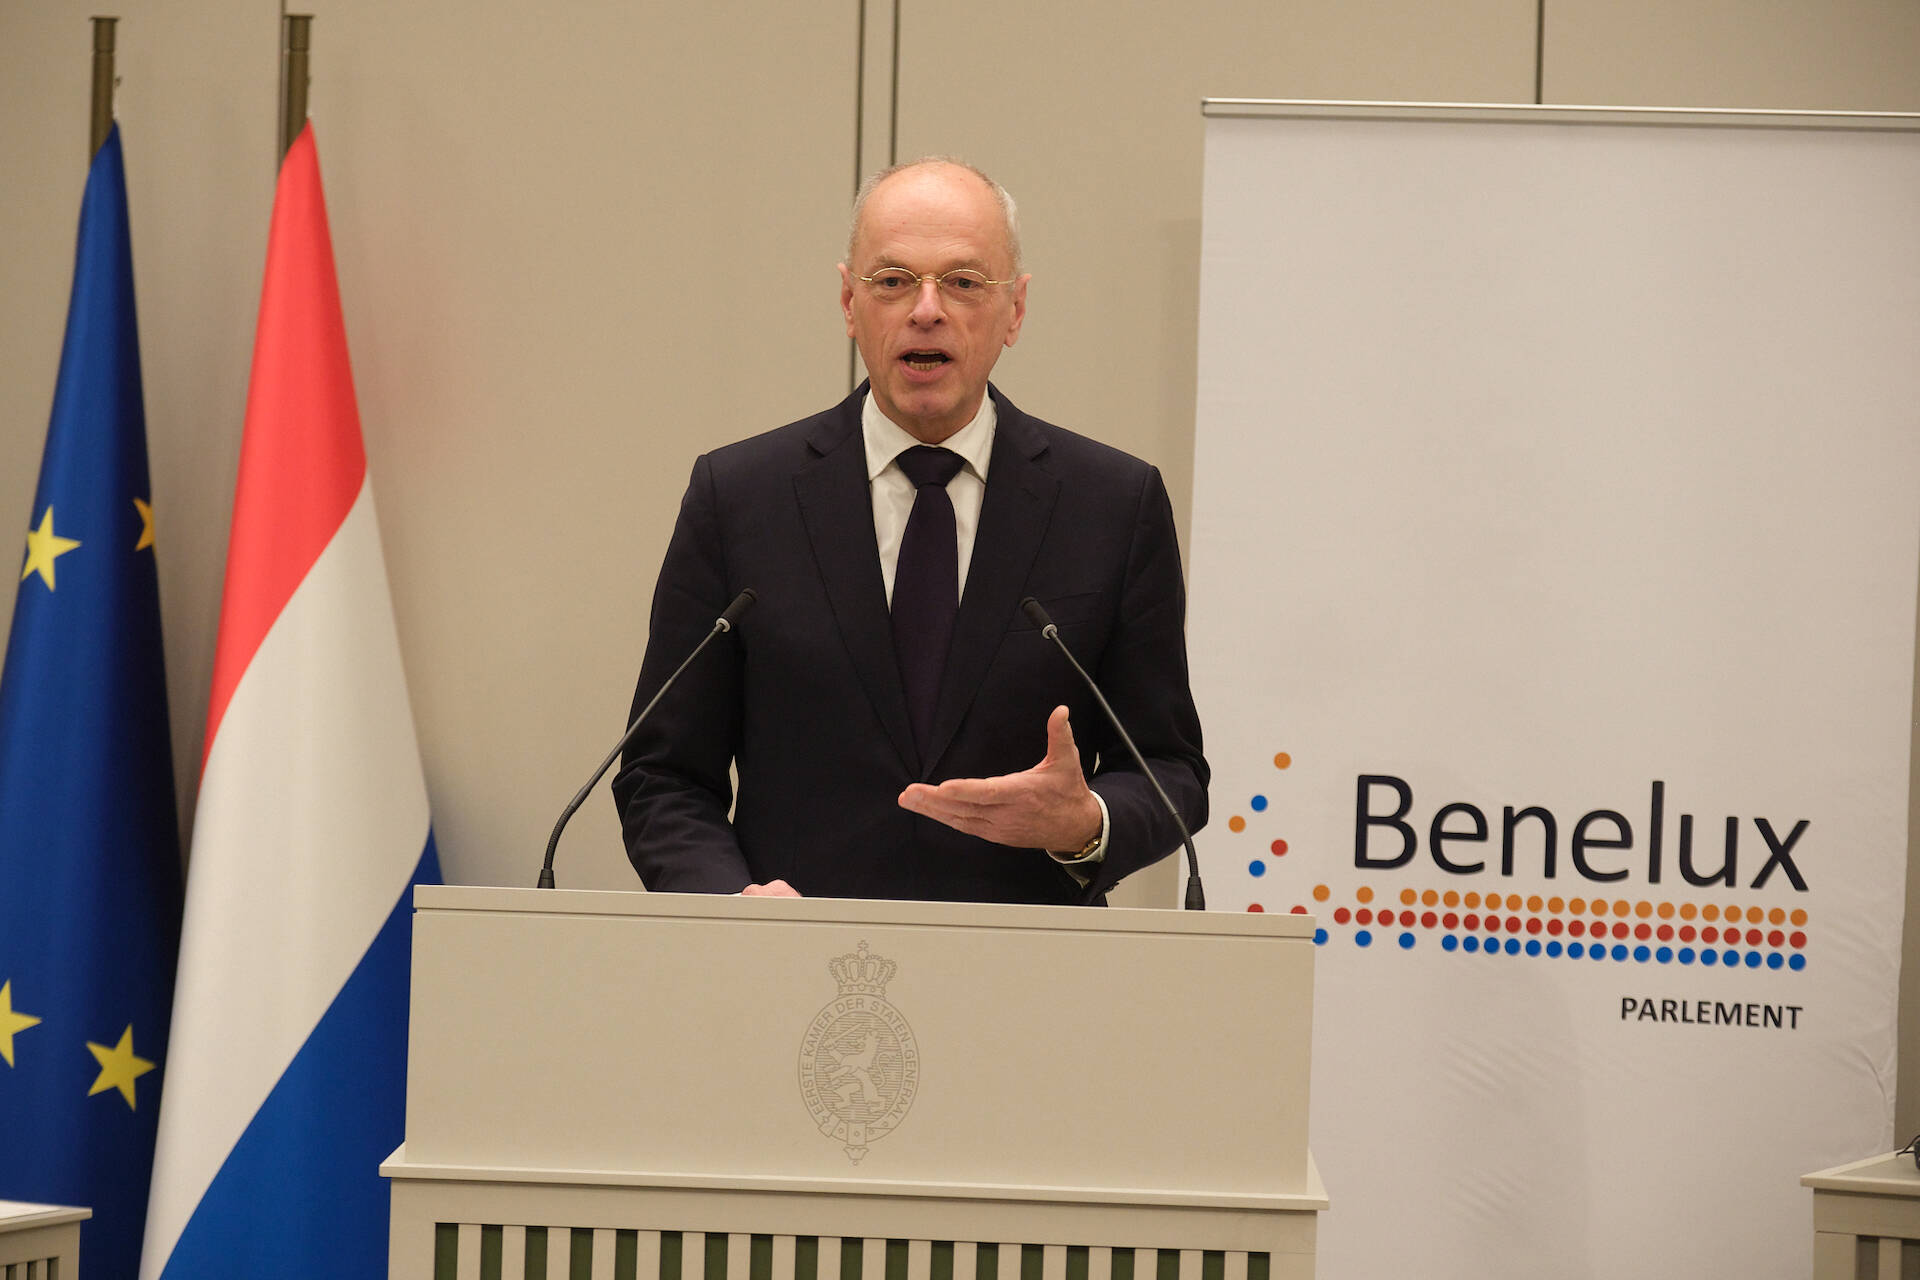 Eerste Kamervoorzitter Jan Anthonie Bruijn heette de leden van het Beneluxparlement welkom